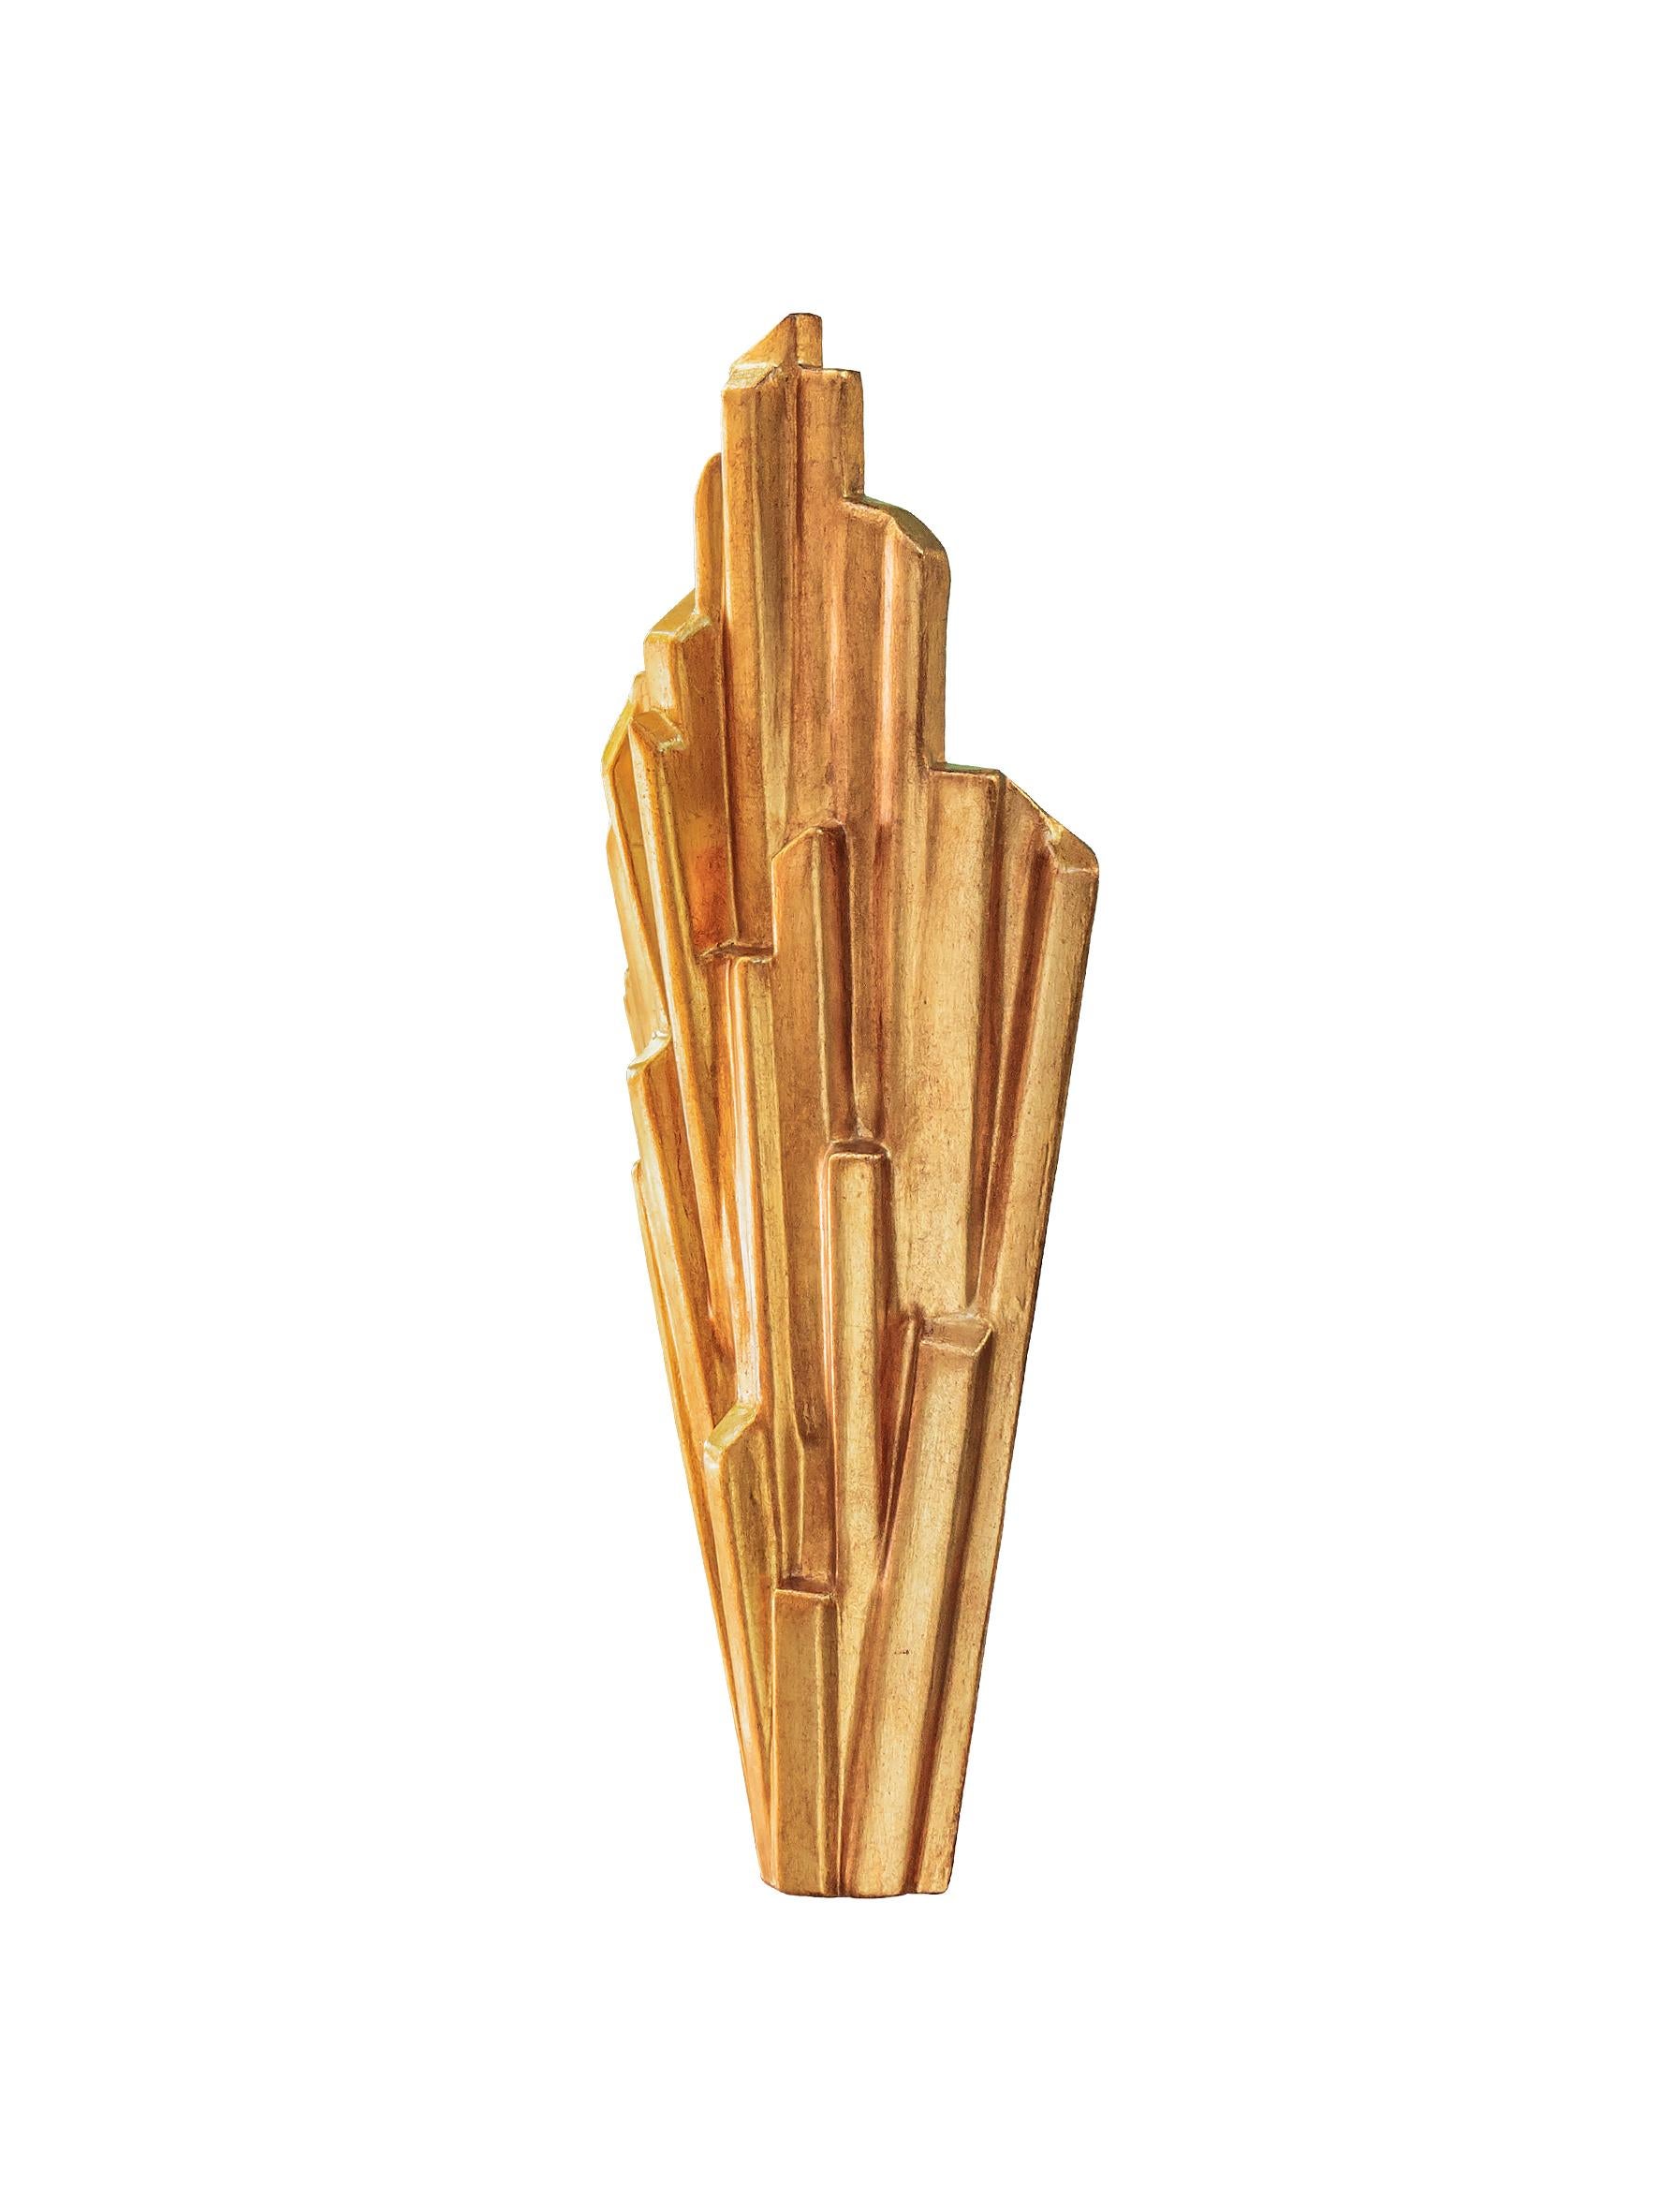 Jede Sinan-Leuchte wird einzeln von Hand gefertigt und zeichnet sich durch ihre klare, skulpturale Ästhetik aus. Auch in weißem Gips oder schwarzem Gips mit antikgoldener Innenseite erhältlich. Alternative Oberflächen verfügbar.
Sie können zwischen